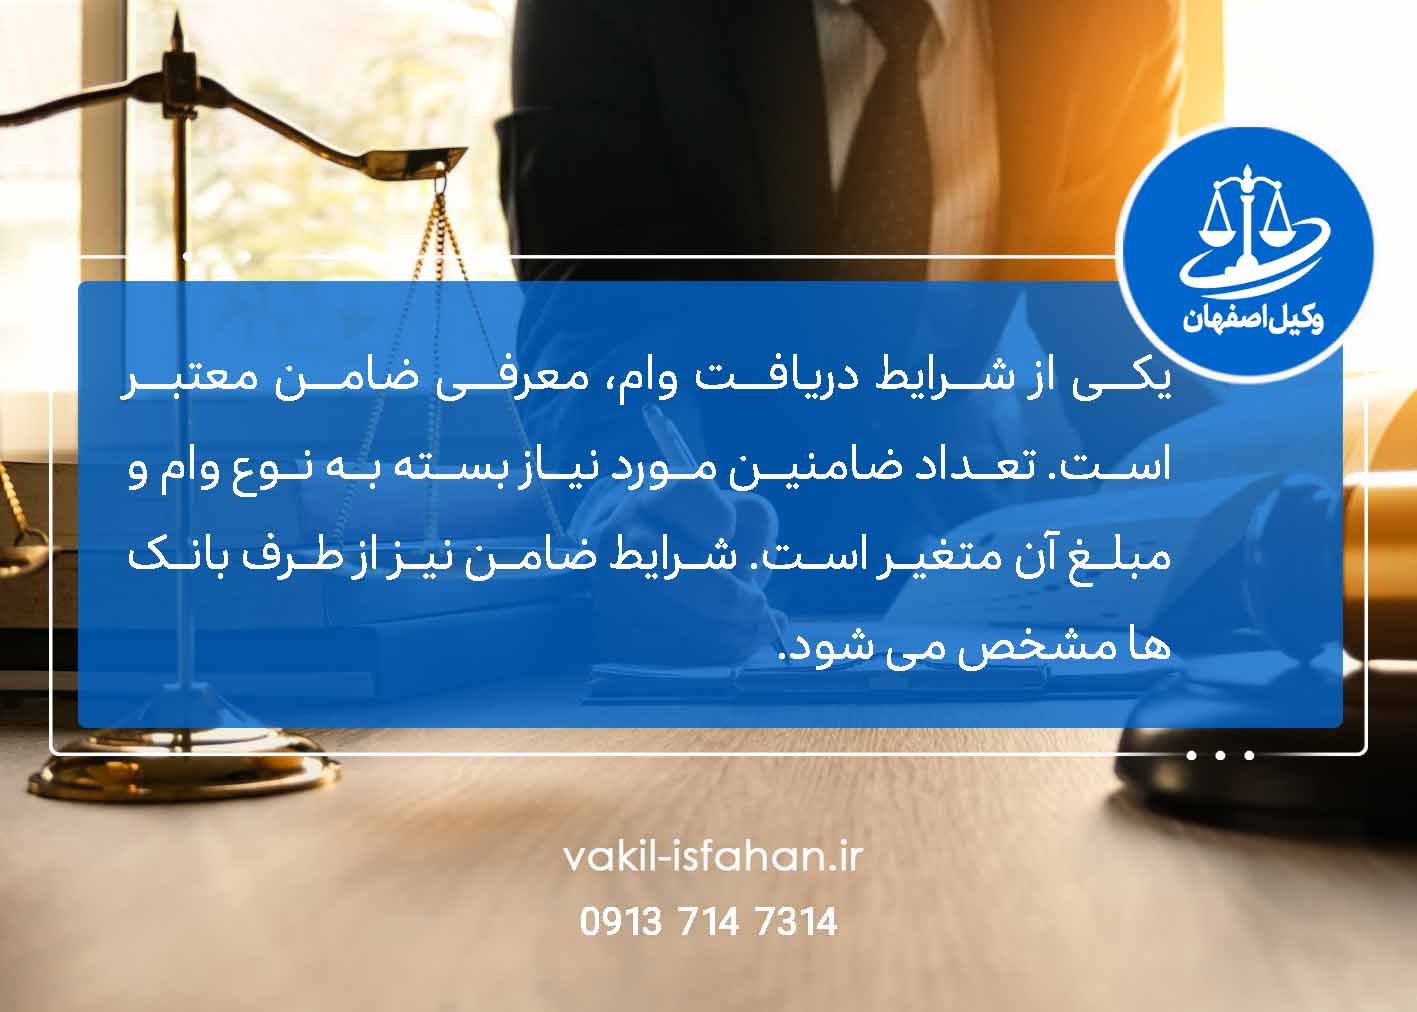 شرایط دریافت وام از بانک ، وام ، بانک ، وکیل ، وکیل اصفهان ، مشاوره حقوقی ، وکیل بانکی